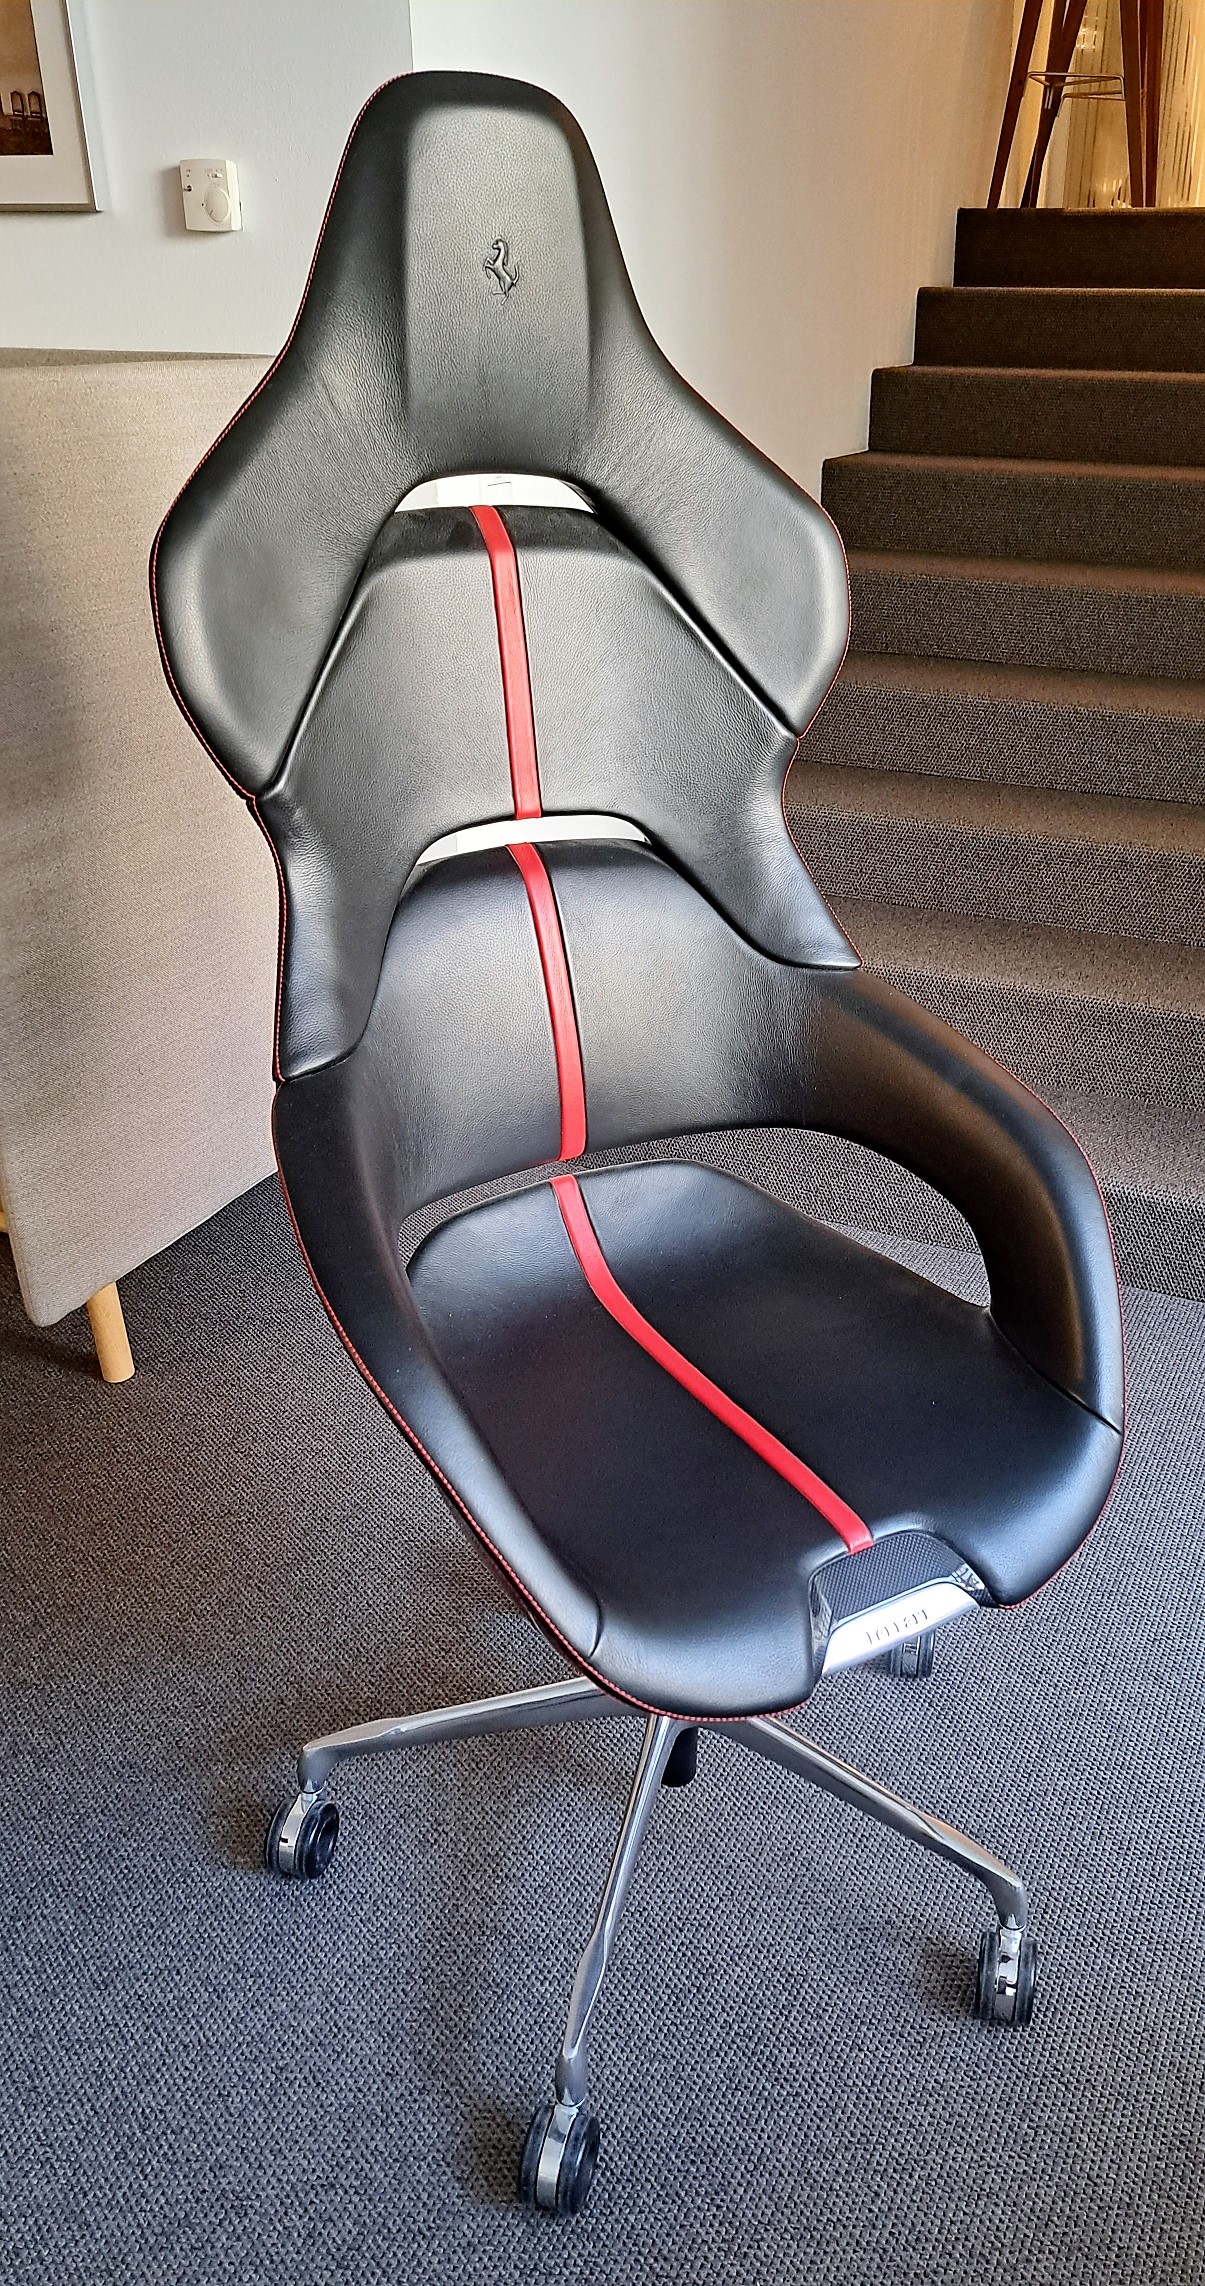 Cockpit Chair von Ferrari, böhmler Einrichtungshaus München, Luxus-Einrichtung